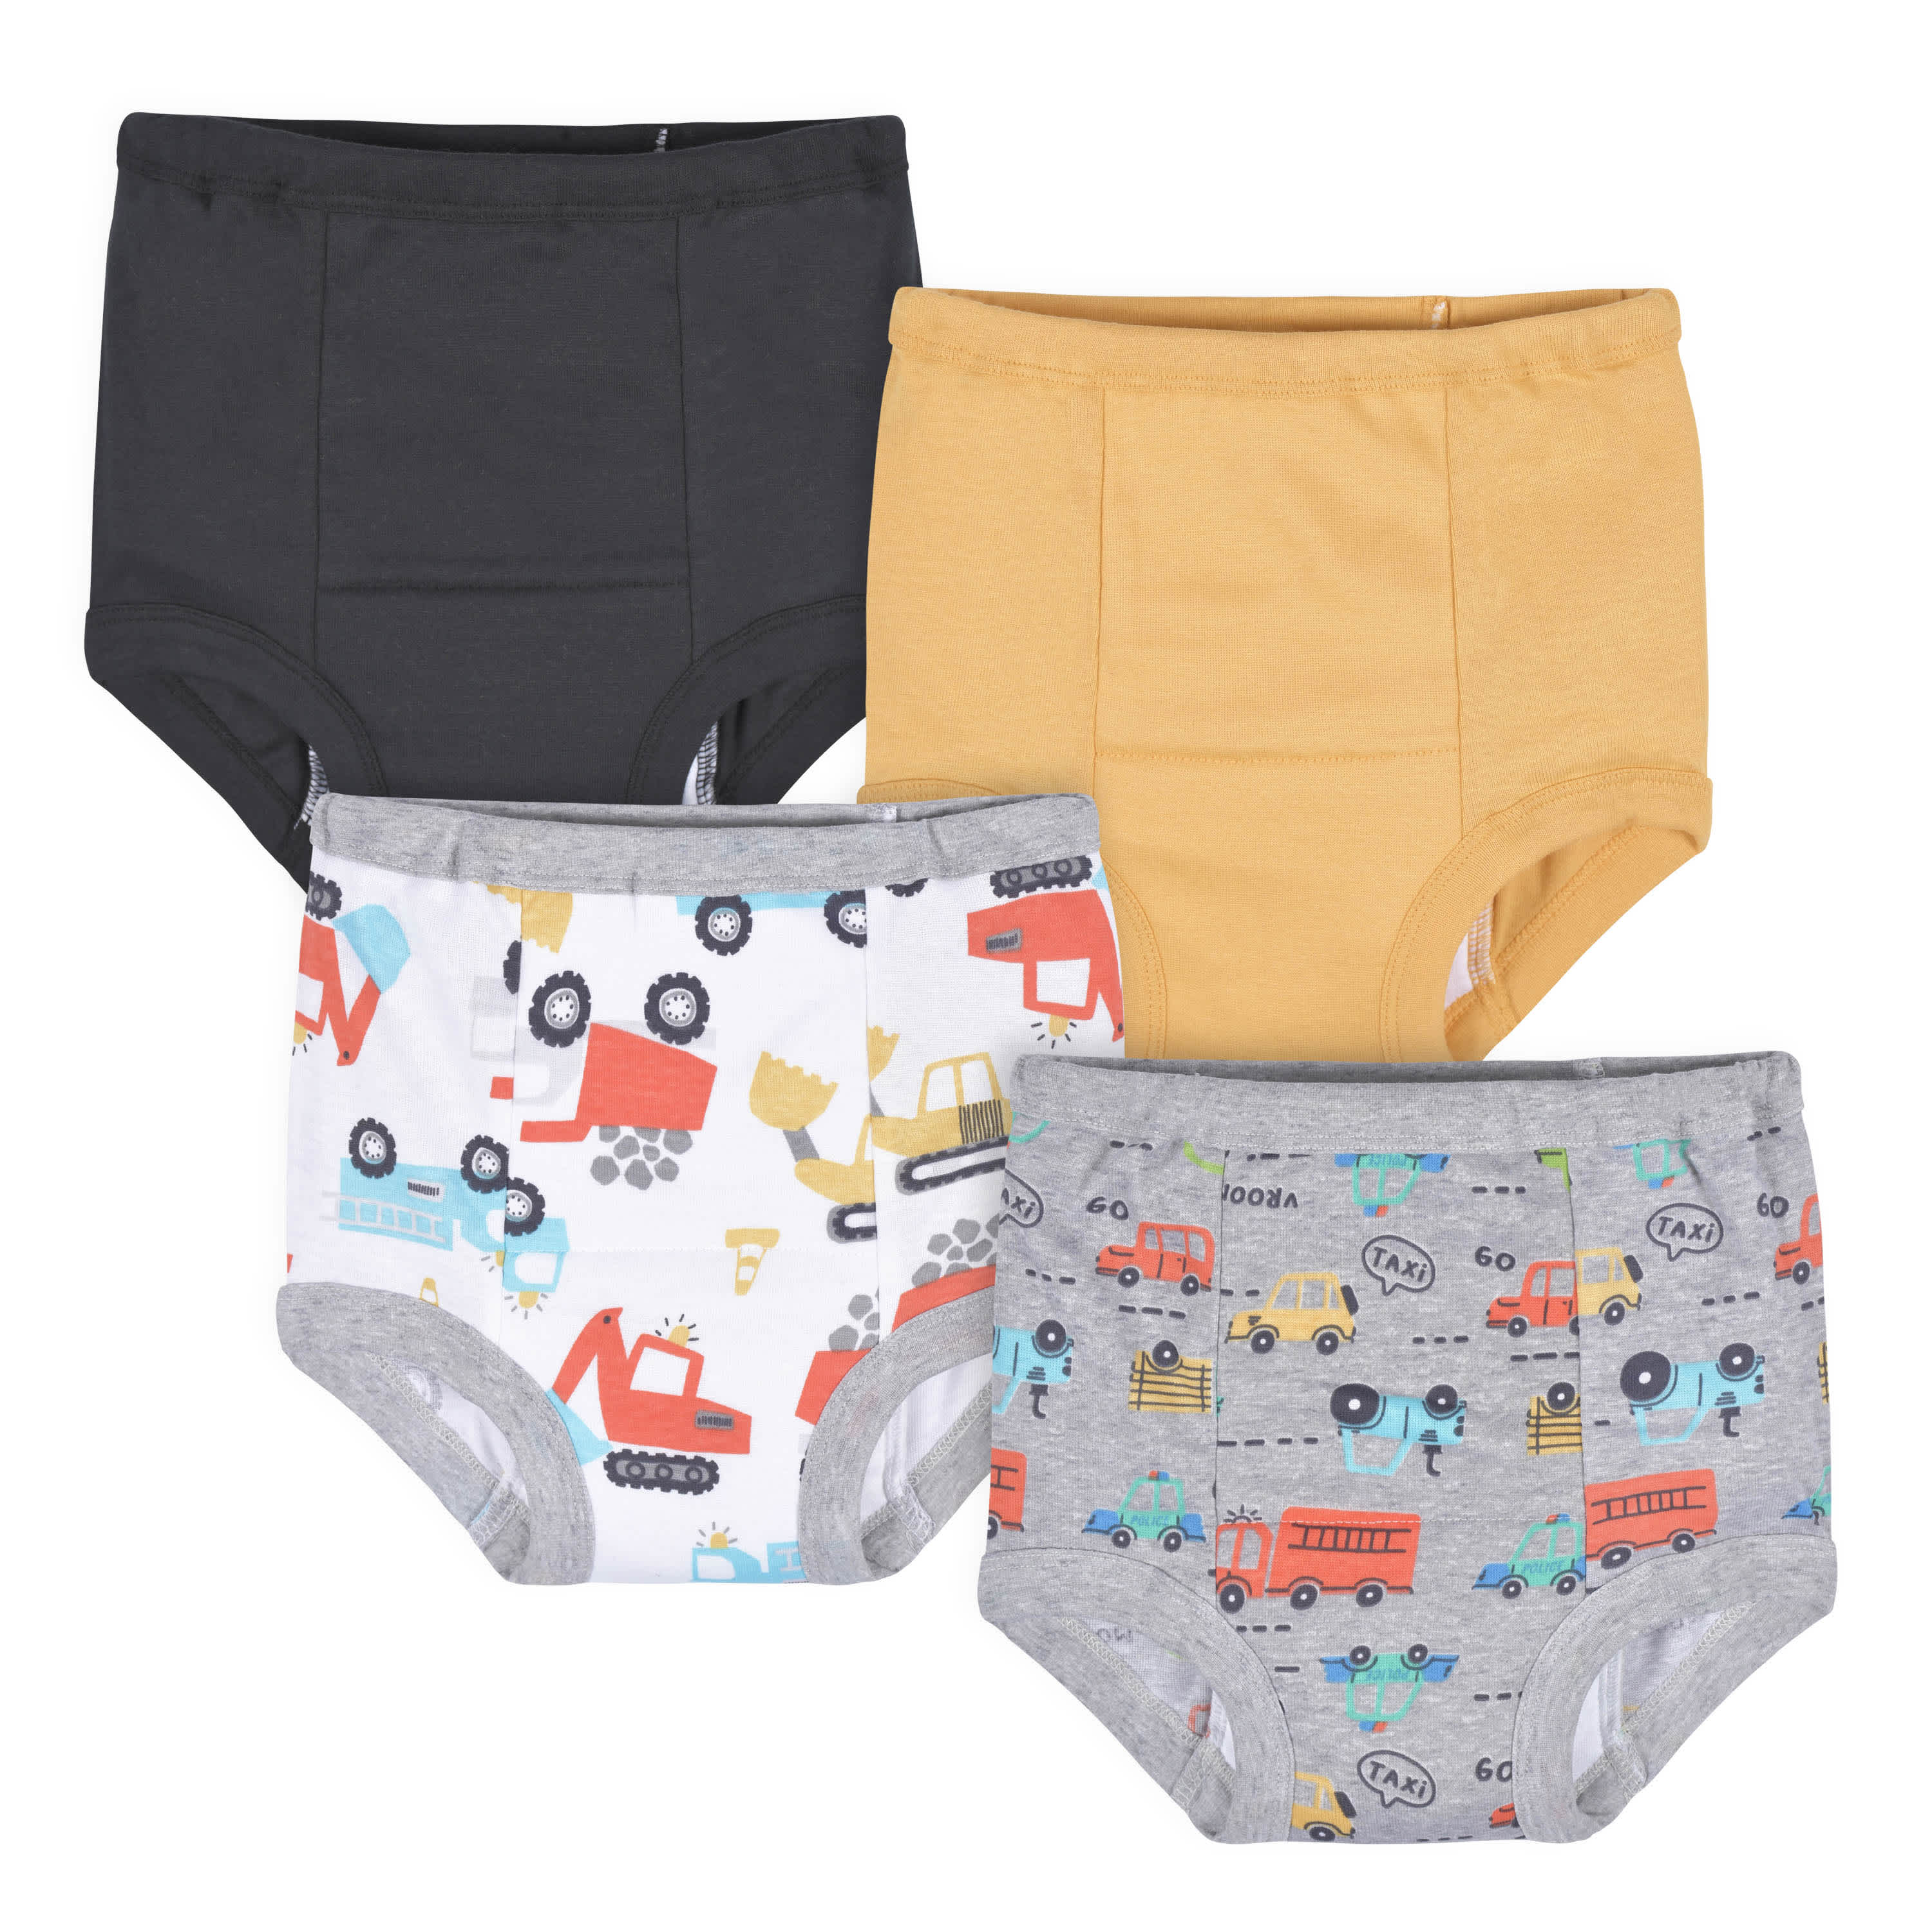 Bluey Unisex Baby Potty Training Pants, 100% Cotton 7-Pack, Sizes 18 M - 4T